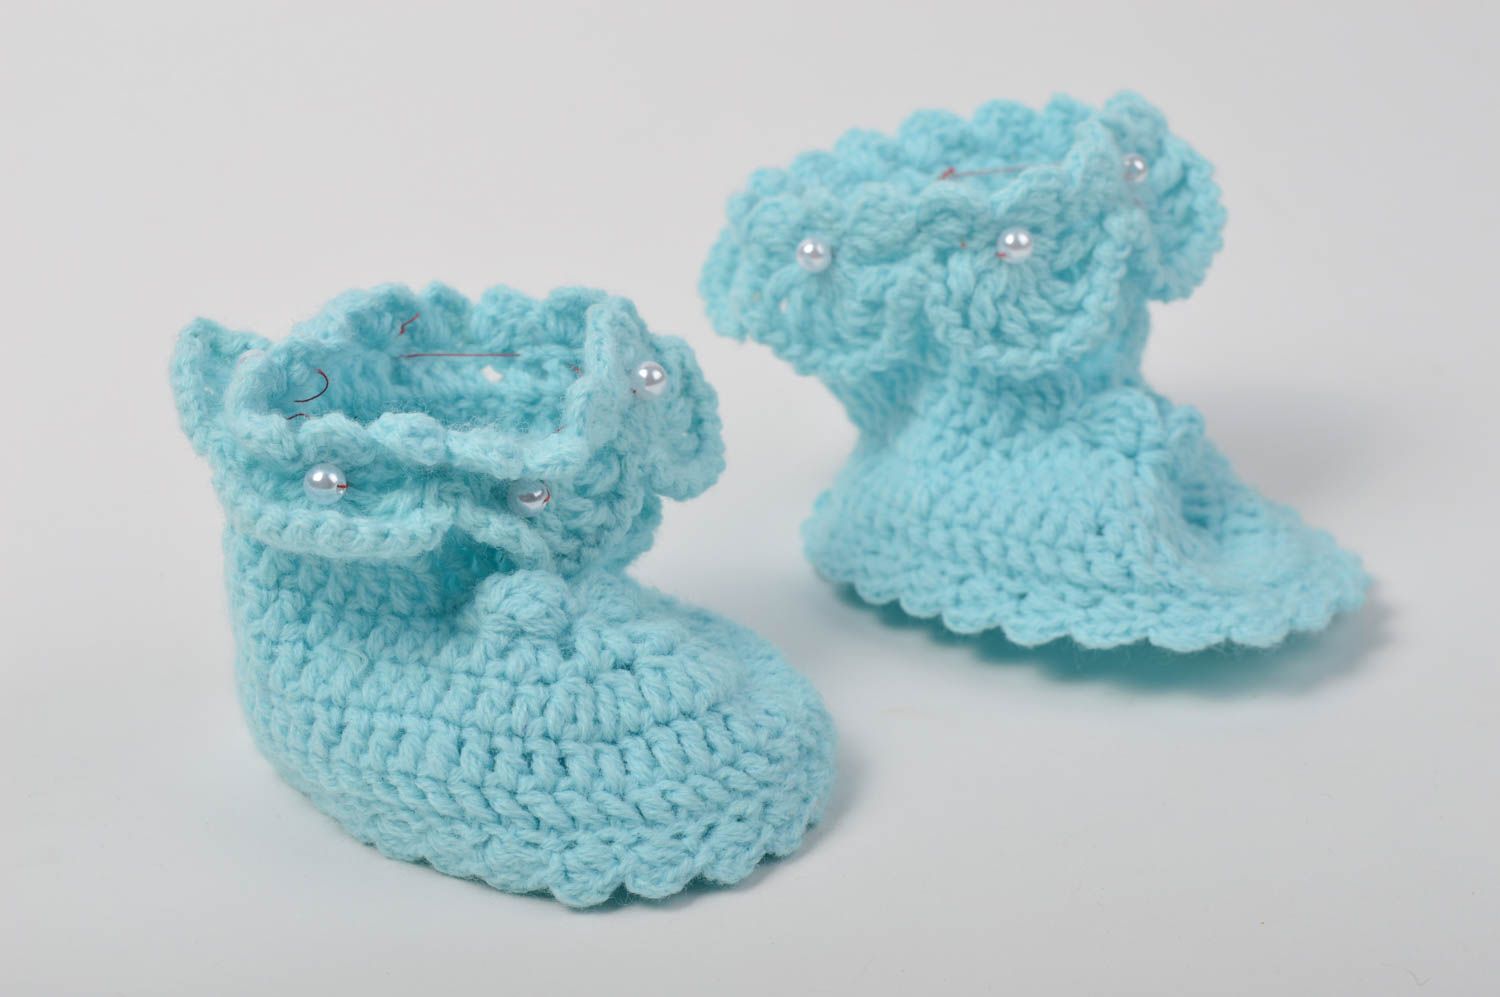 Crochet socks crochet booties for babies booties for newborns unusual booties photo 3